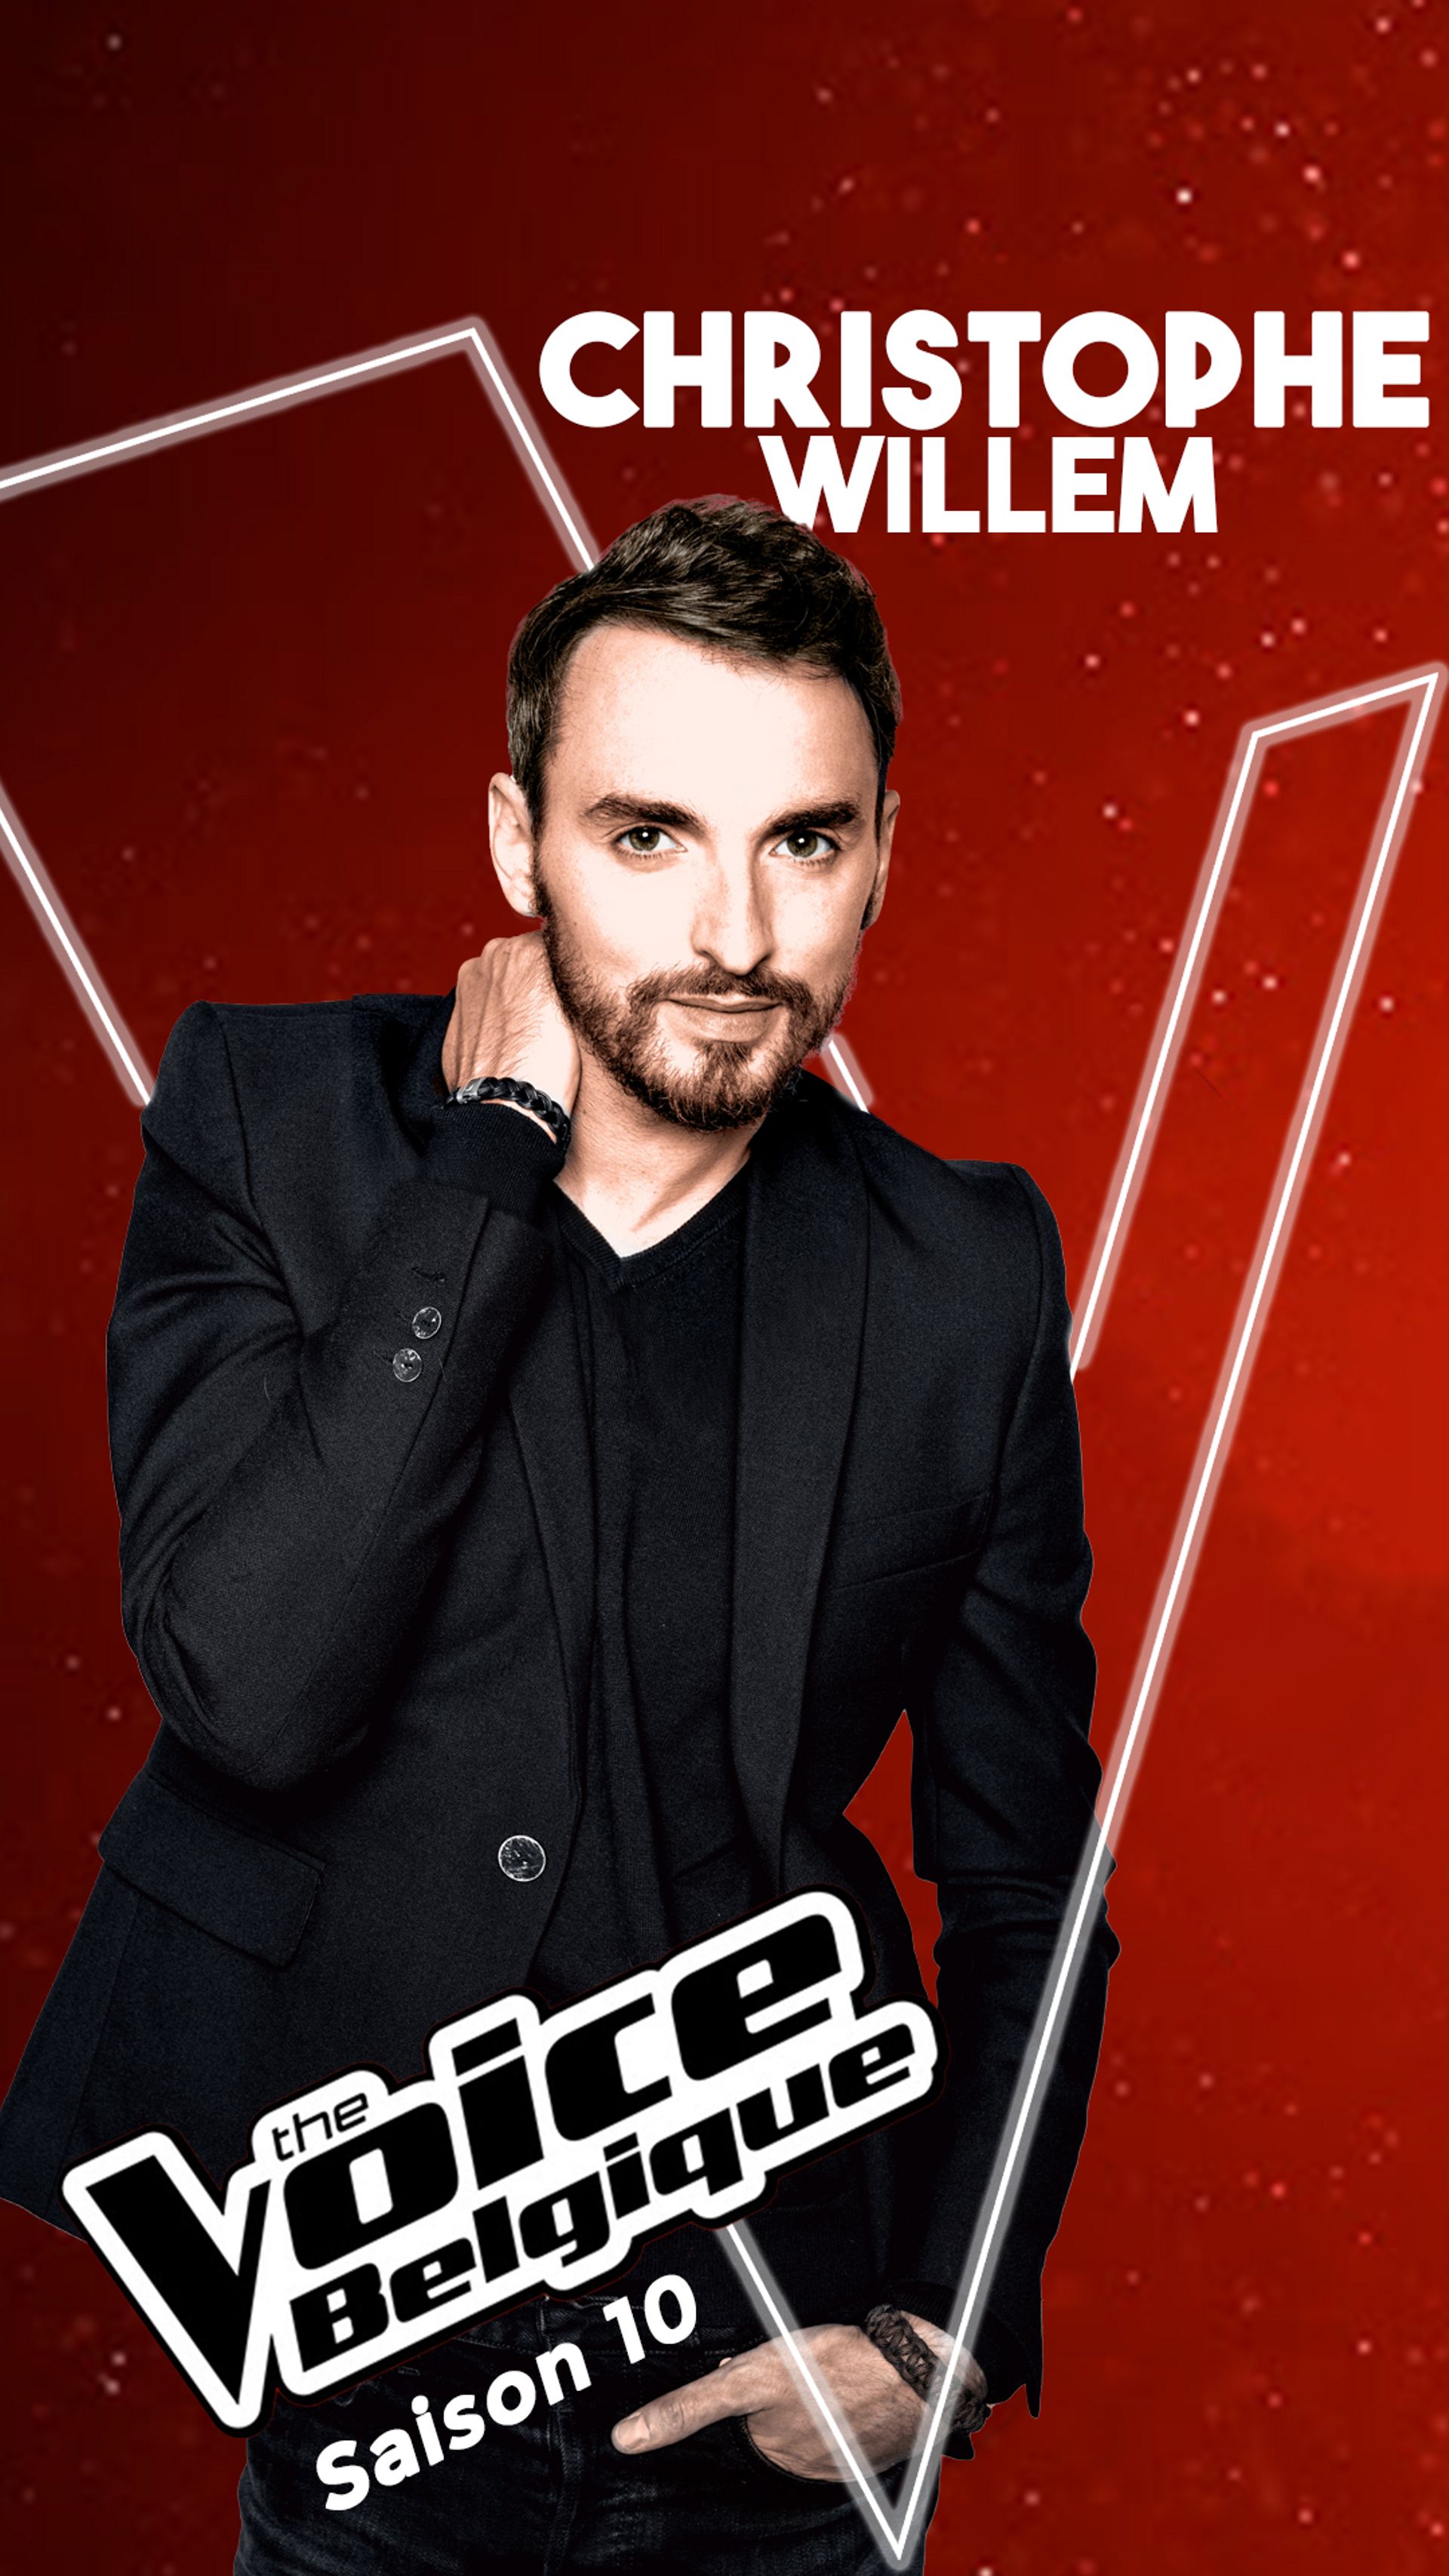 Christophe Willem, coach de la saison 10 de The Voice Belgique 